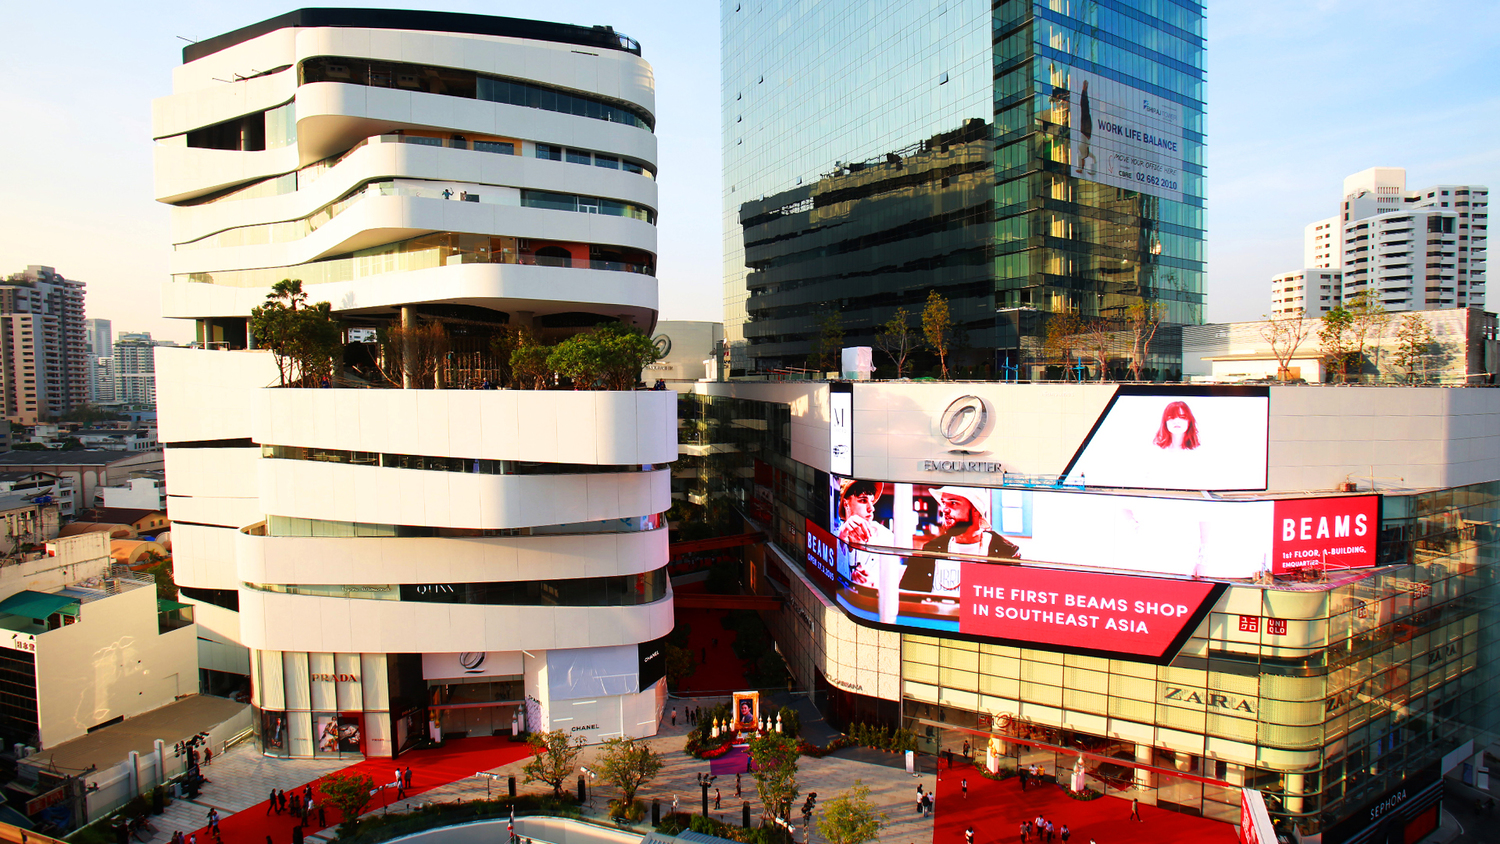 EmQuartier Bangkok - Luxury Shopping Mall on Sukhumvit Road – Go